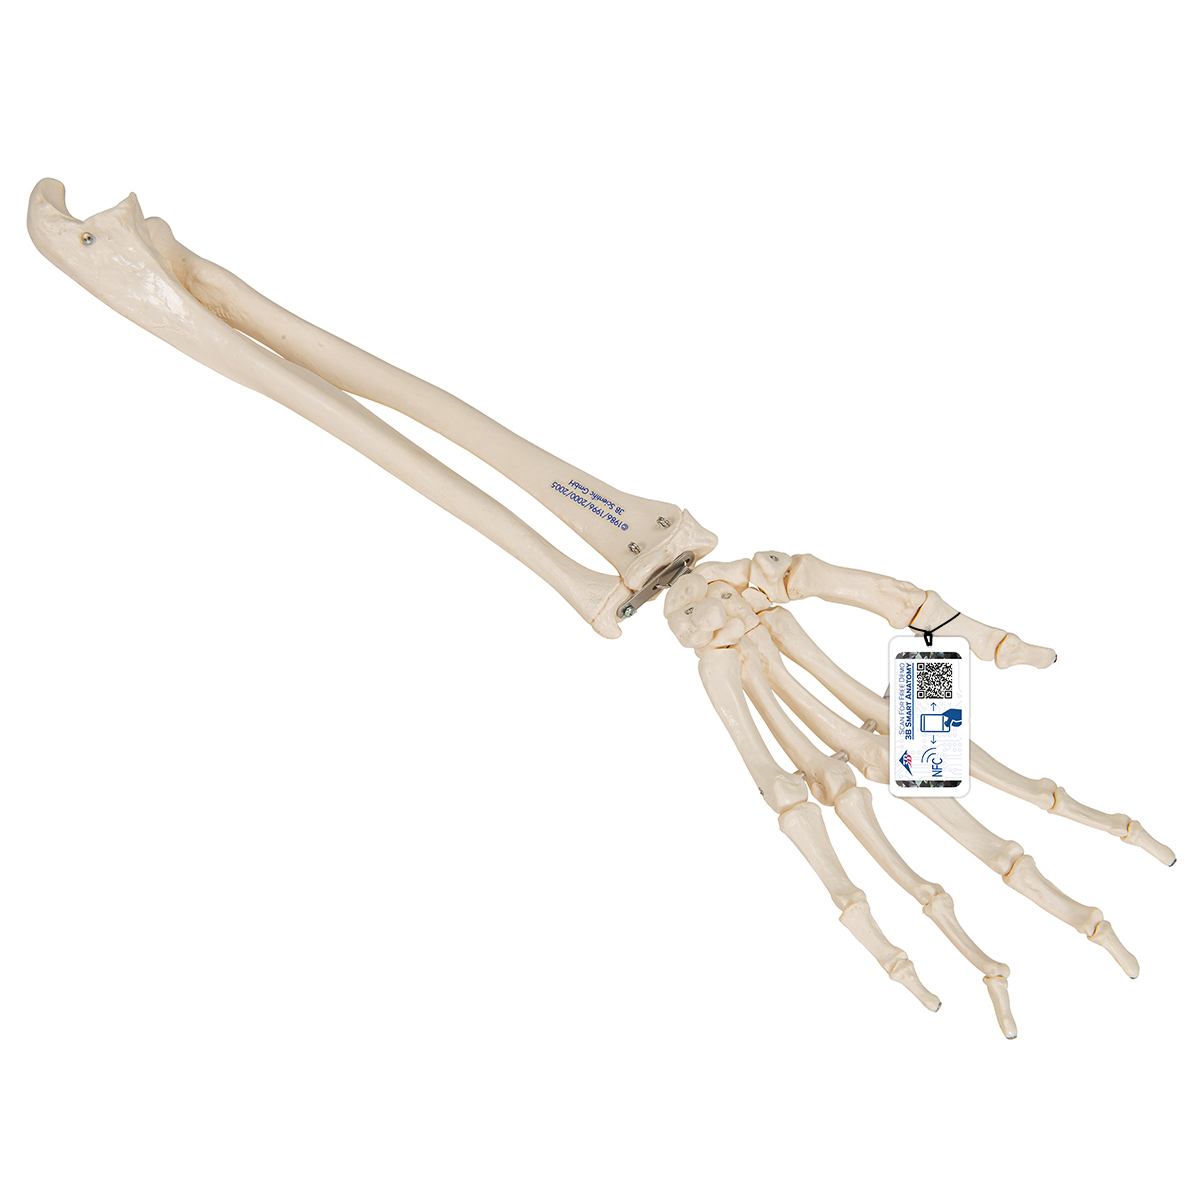 Handskelett Modell mit Unterarm, elastisch montiert - 3B Smart Anatomy, Bestellnummer 1019369, A40/3, 3B Scientific